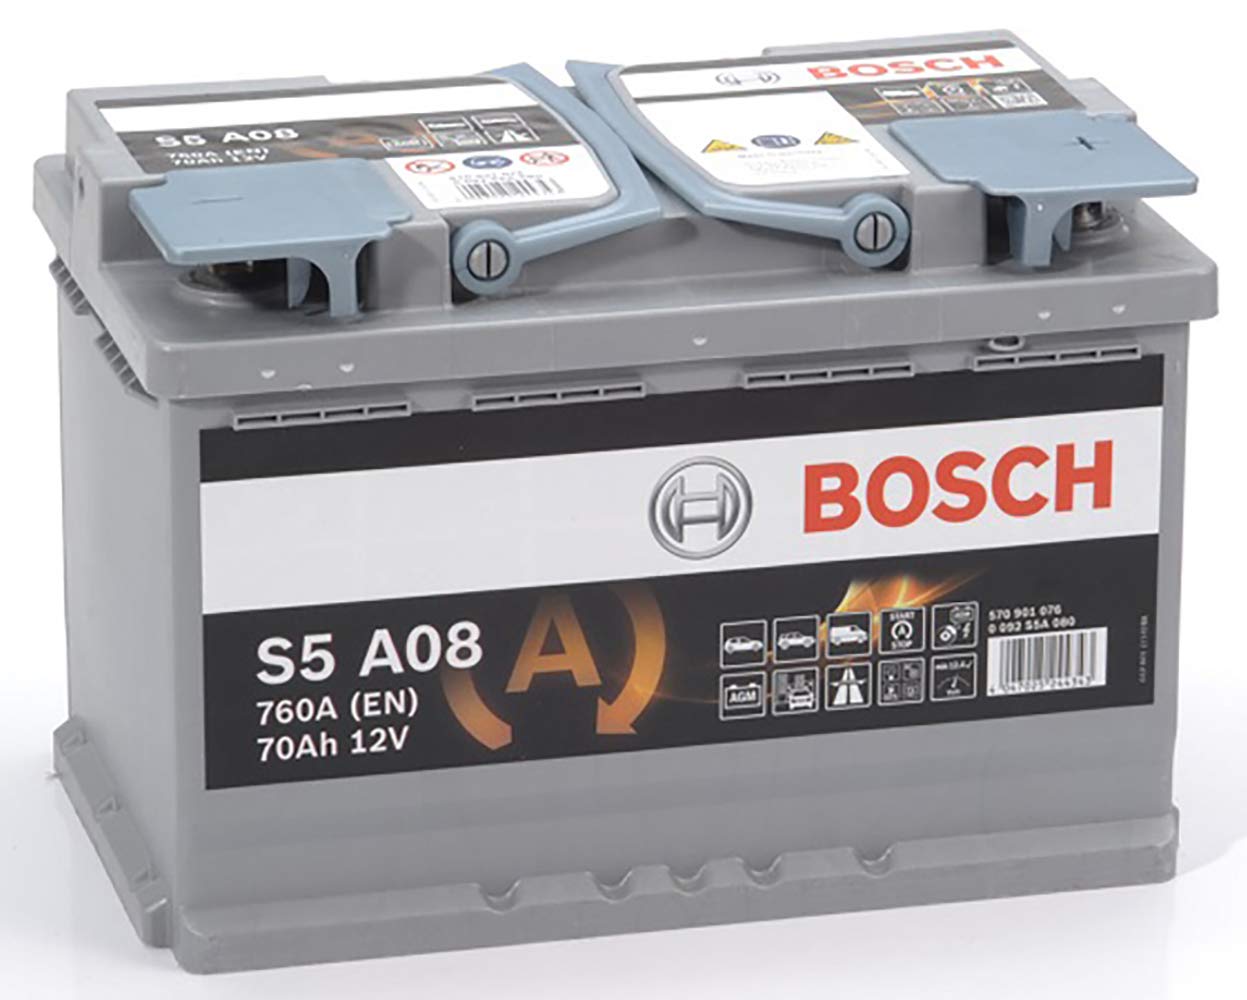 Bosch S5A08 - Autobatterie - 70A/h - 760A - AGM-Technologie - angepasst für Fahrzeuge mit Start/Stopp-System, 278 x 175 x 190 mm von Bosch Automotive